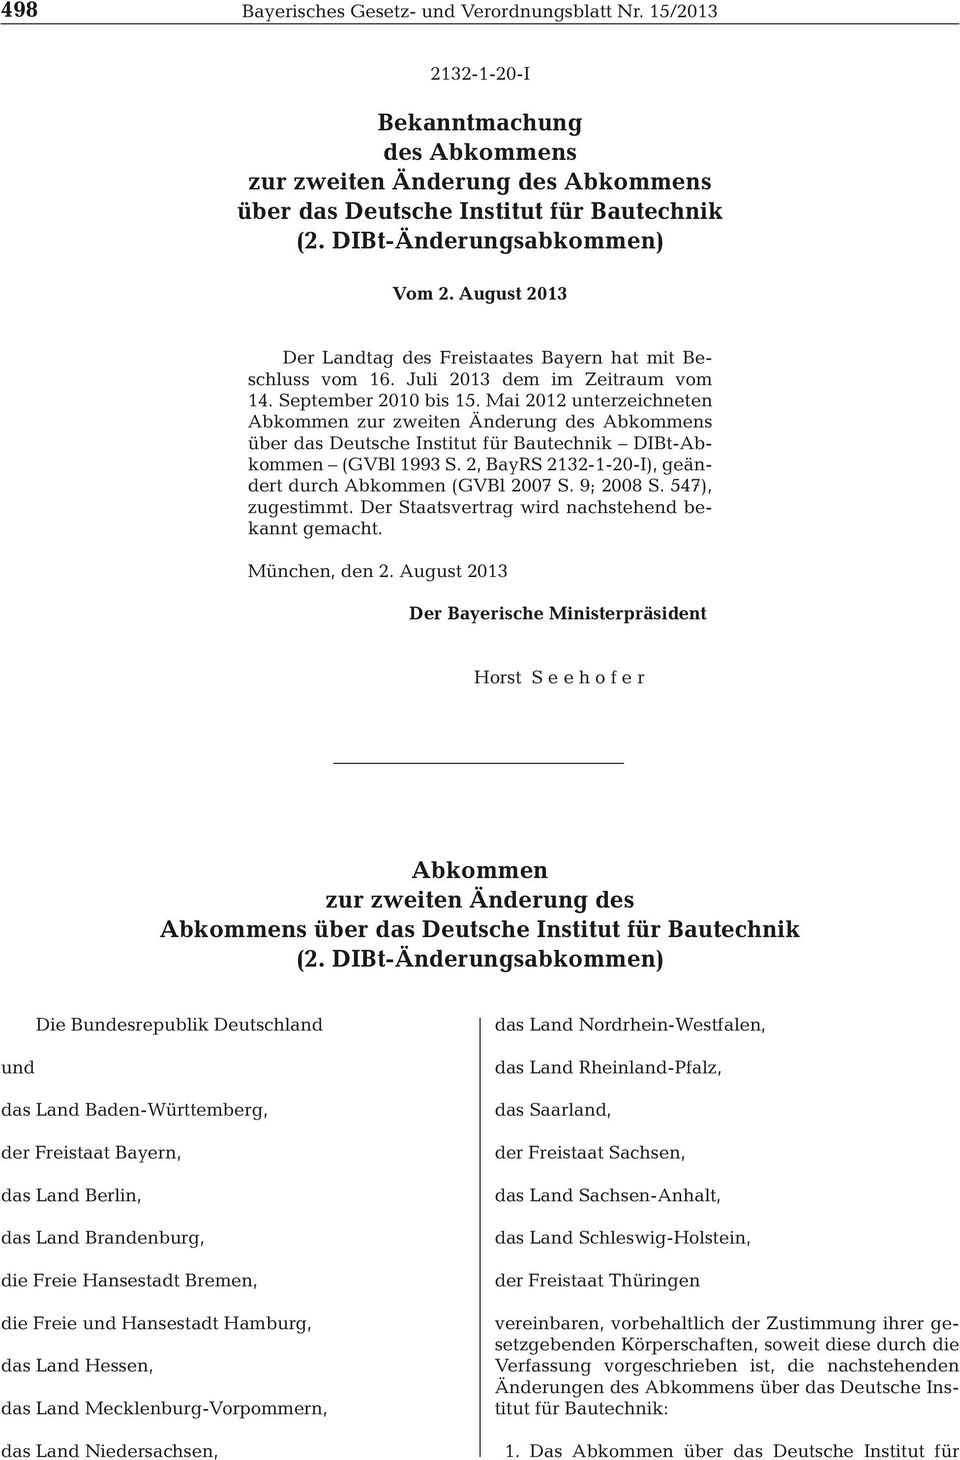 Mai 2012 unterzeichneten Abkommen zur zweiten Änderung des Abkommens über das Deutsche Institut für Bautechnik DIBt-Abkommen (GVBl 1993 S. 2, BayRS 2132-1-20-I), geändert durch Abkommen (GVBl 2007 S.